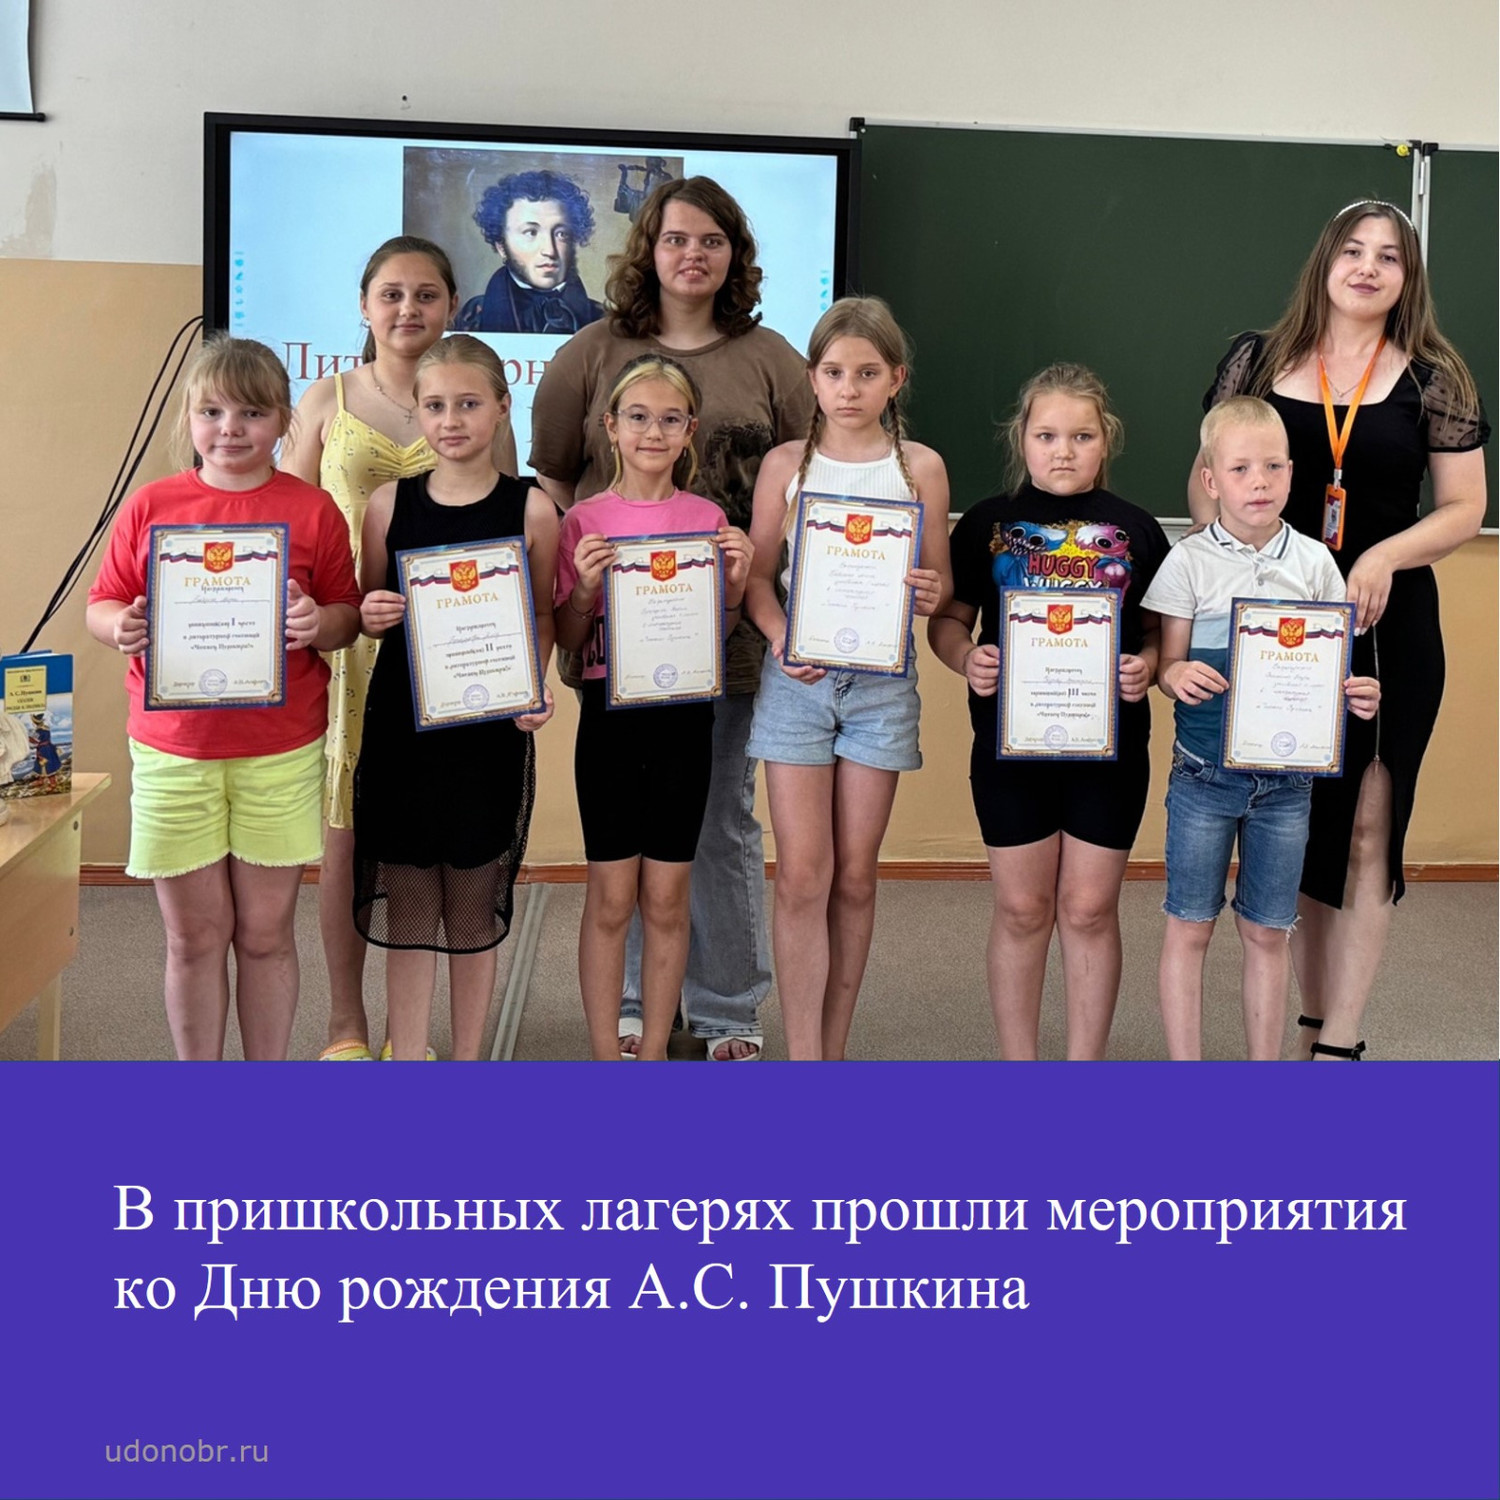 В пришкольных лагерях прошли мероприятия ко Дню рождения А.С.Пушкина